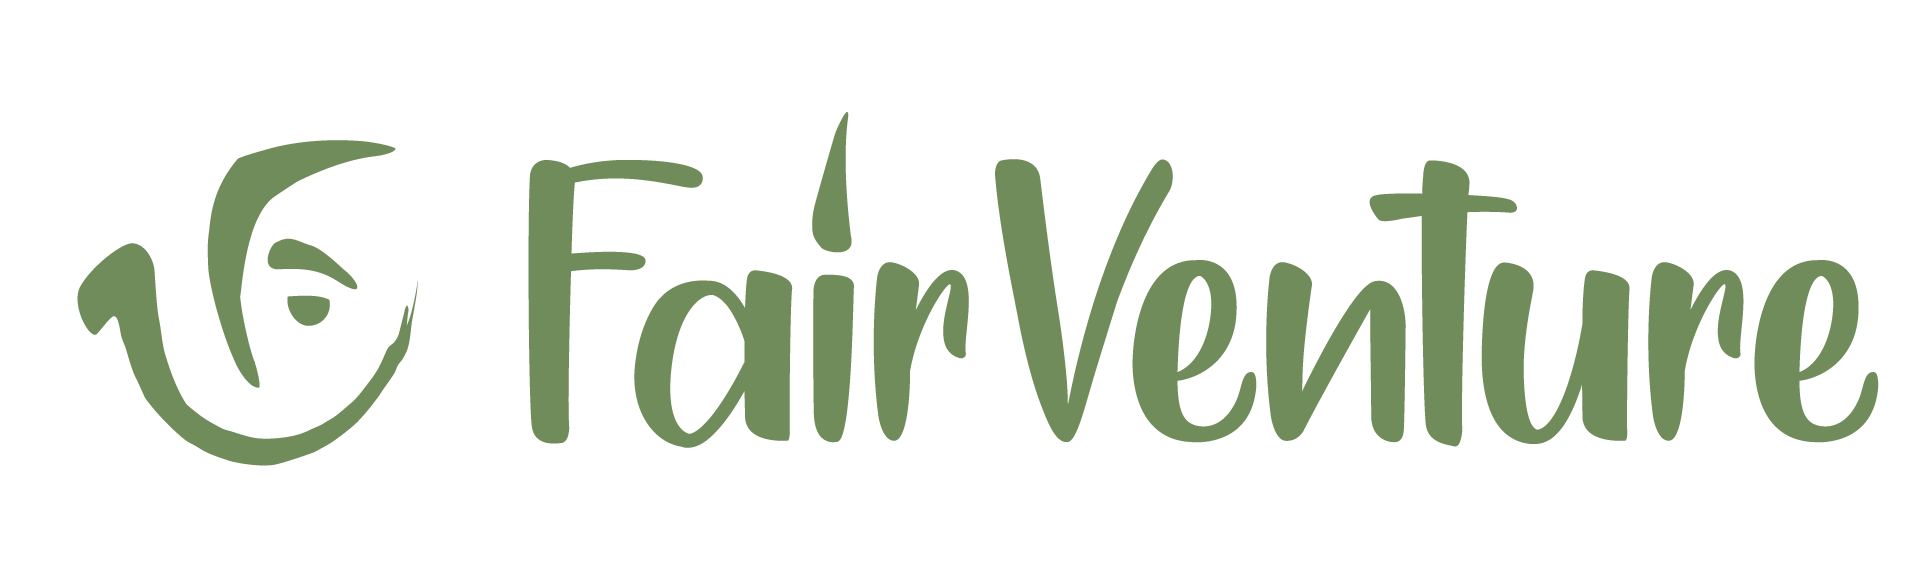 FairVenture - Vertrieb fürs Gemeinwohl